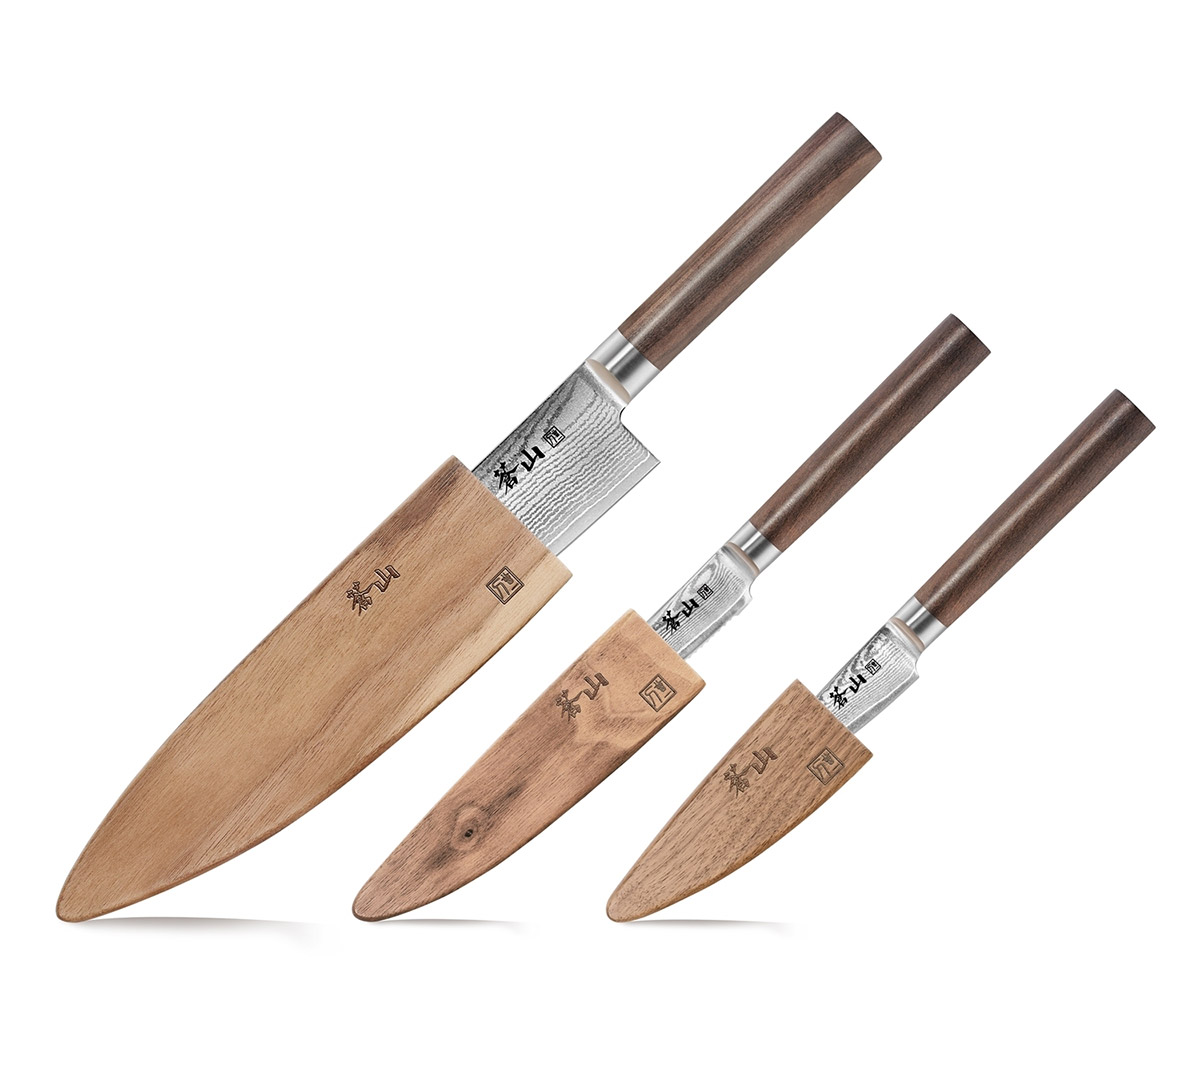 https://www.luxuriousinteriors.com/wp-content/uploads/2020/09/61932-j-series-3-piece-starter-knives-walnut-wood-sheath.jpg